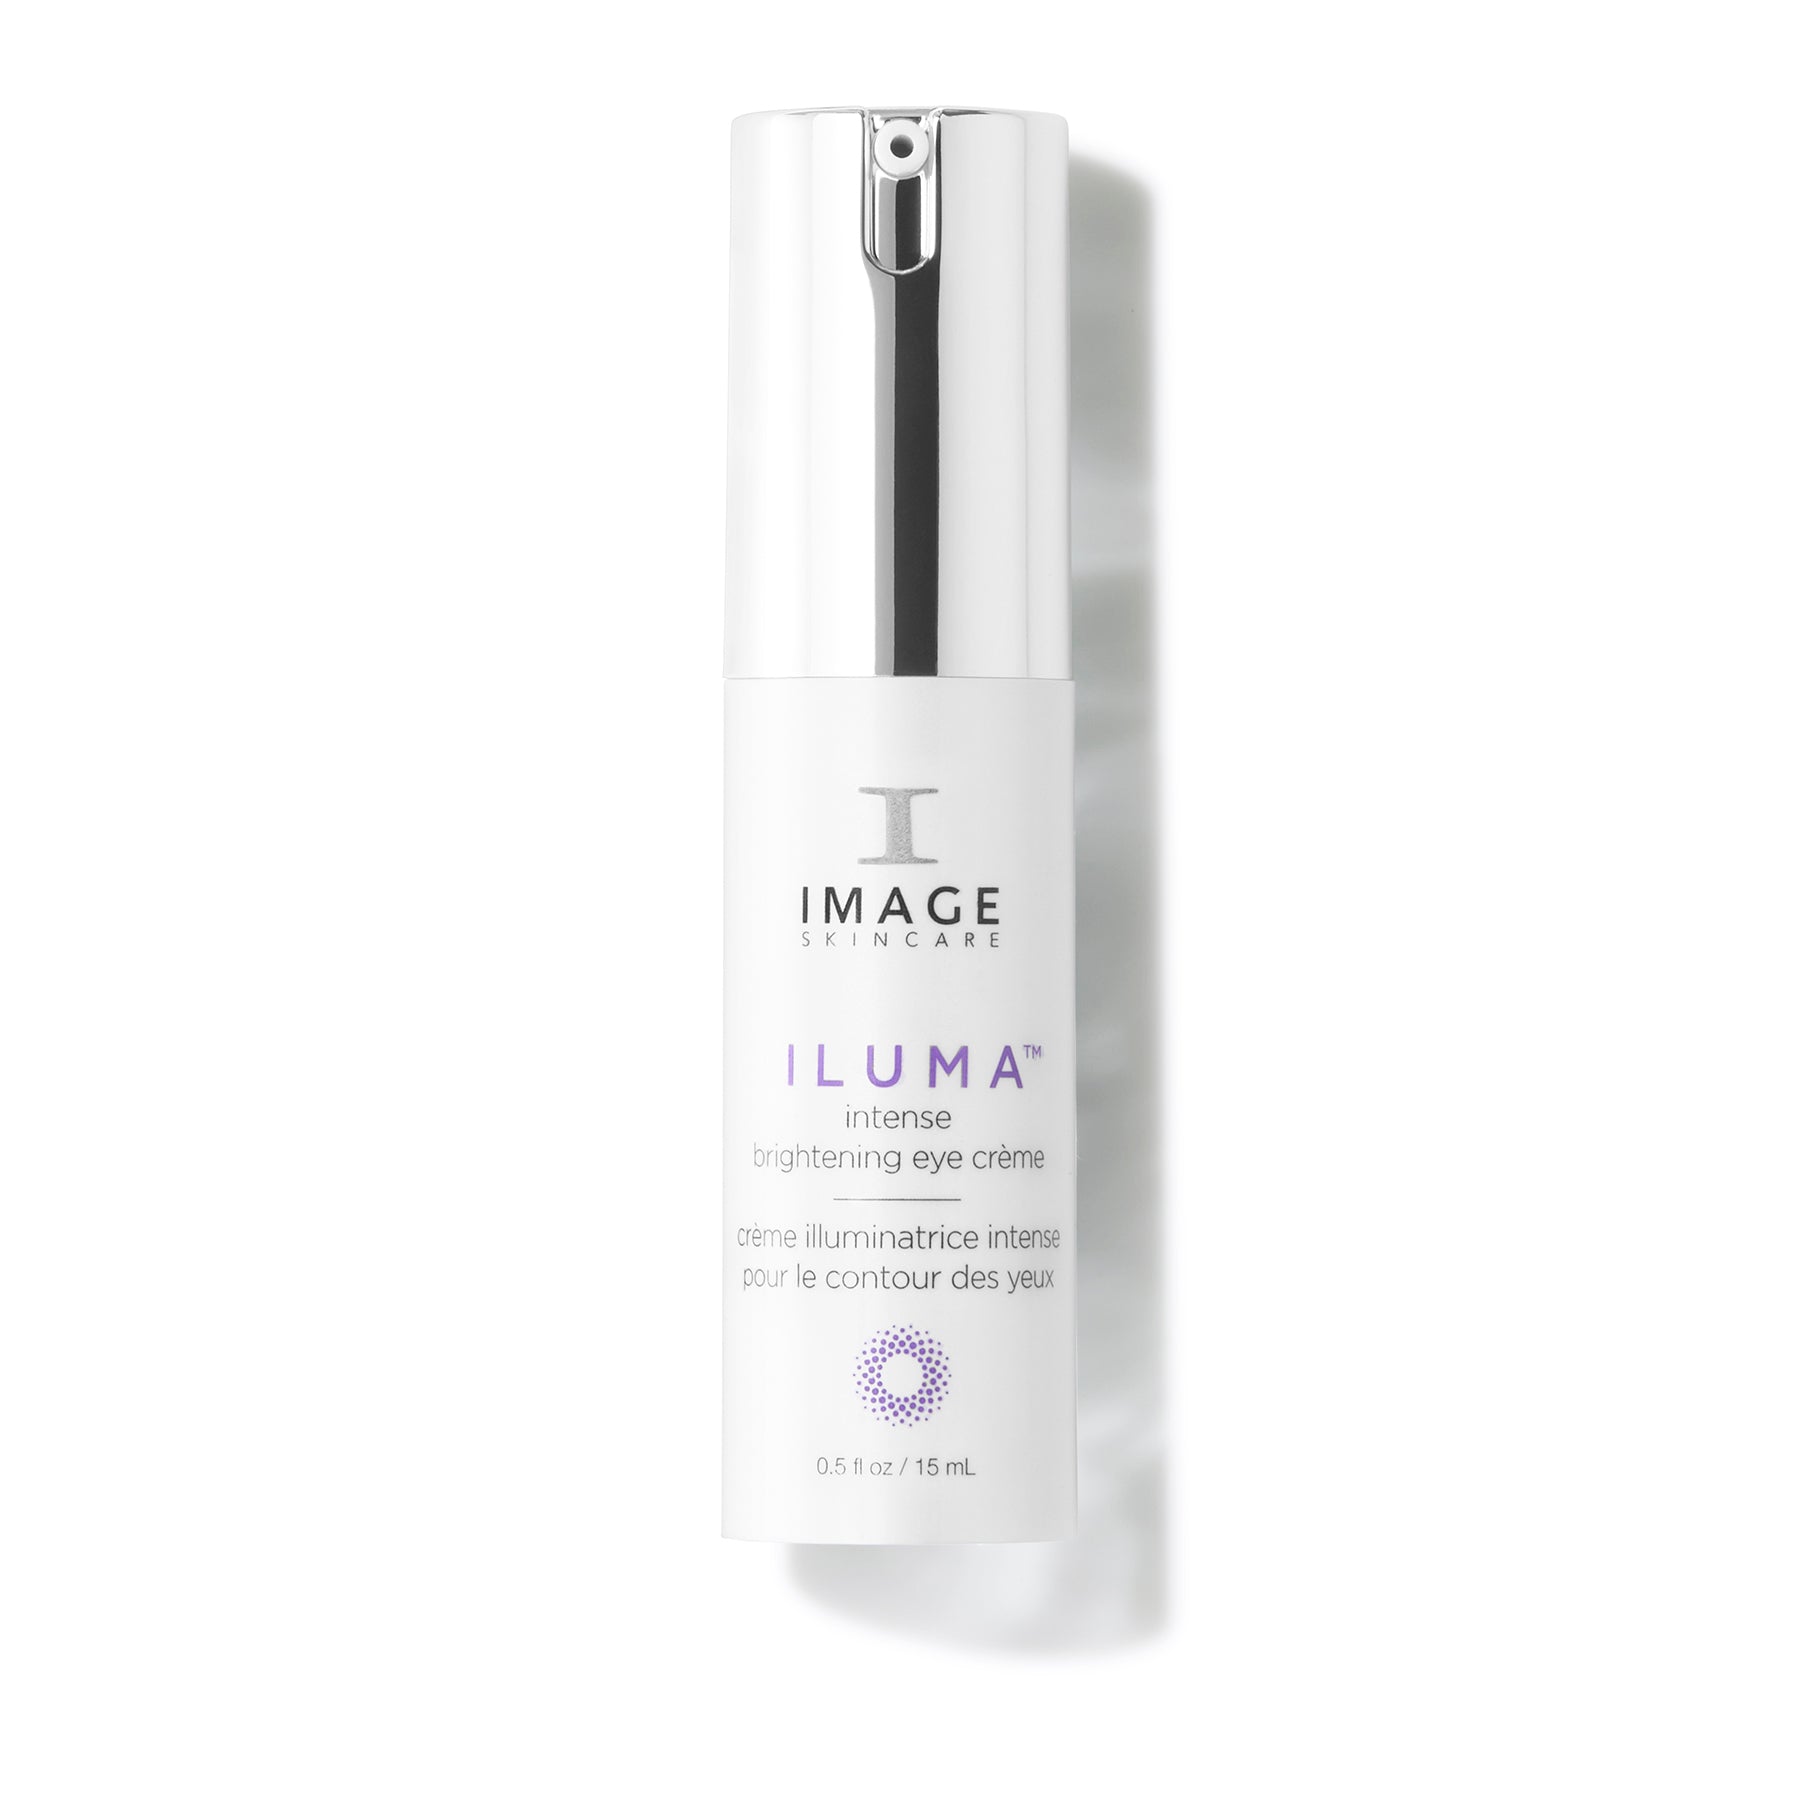 ILUMA® intense brightening eye crème